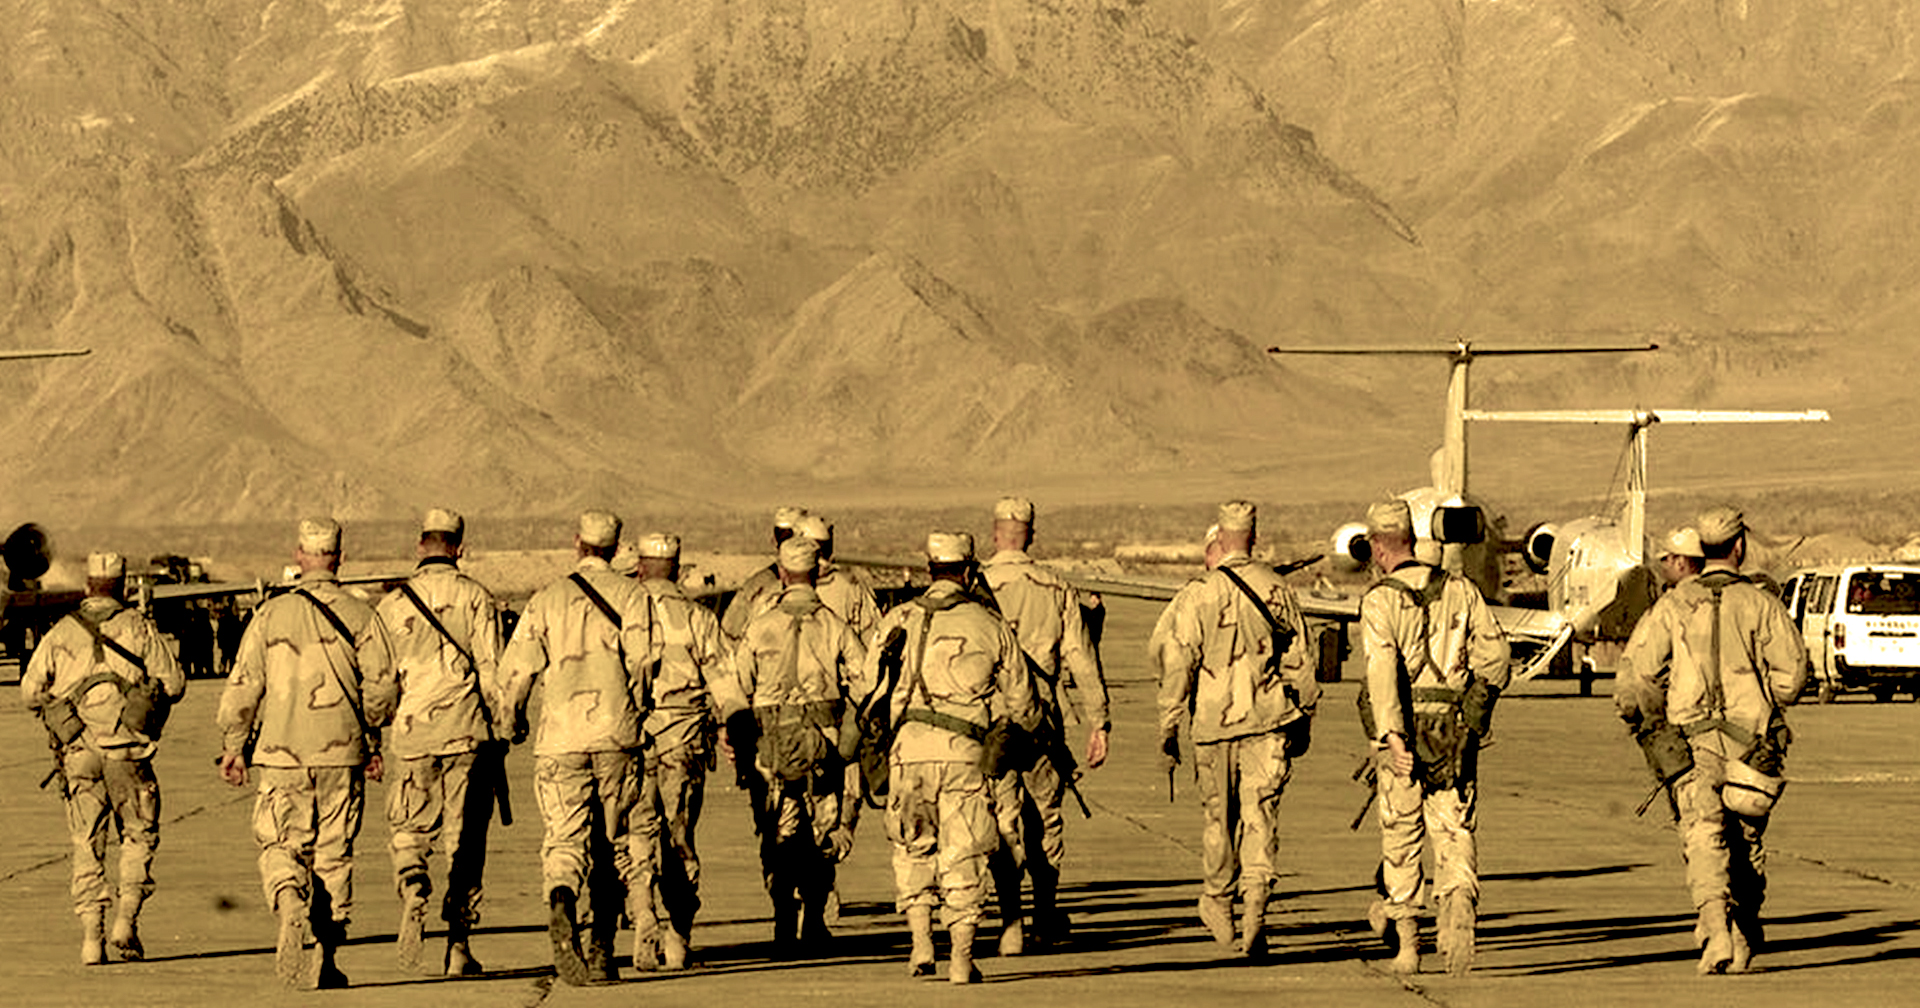 ‘สหรัฐอเมริกา’ กับบทเรียนเจ็บแสบใน ‘อัฟกานิสถาน’